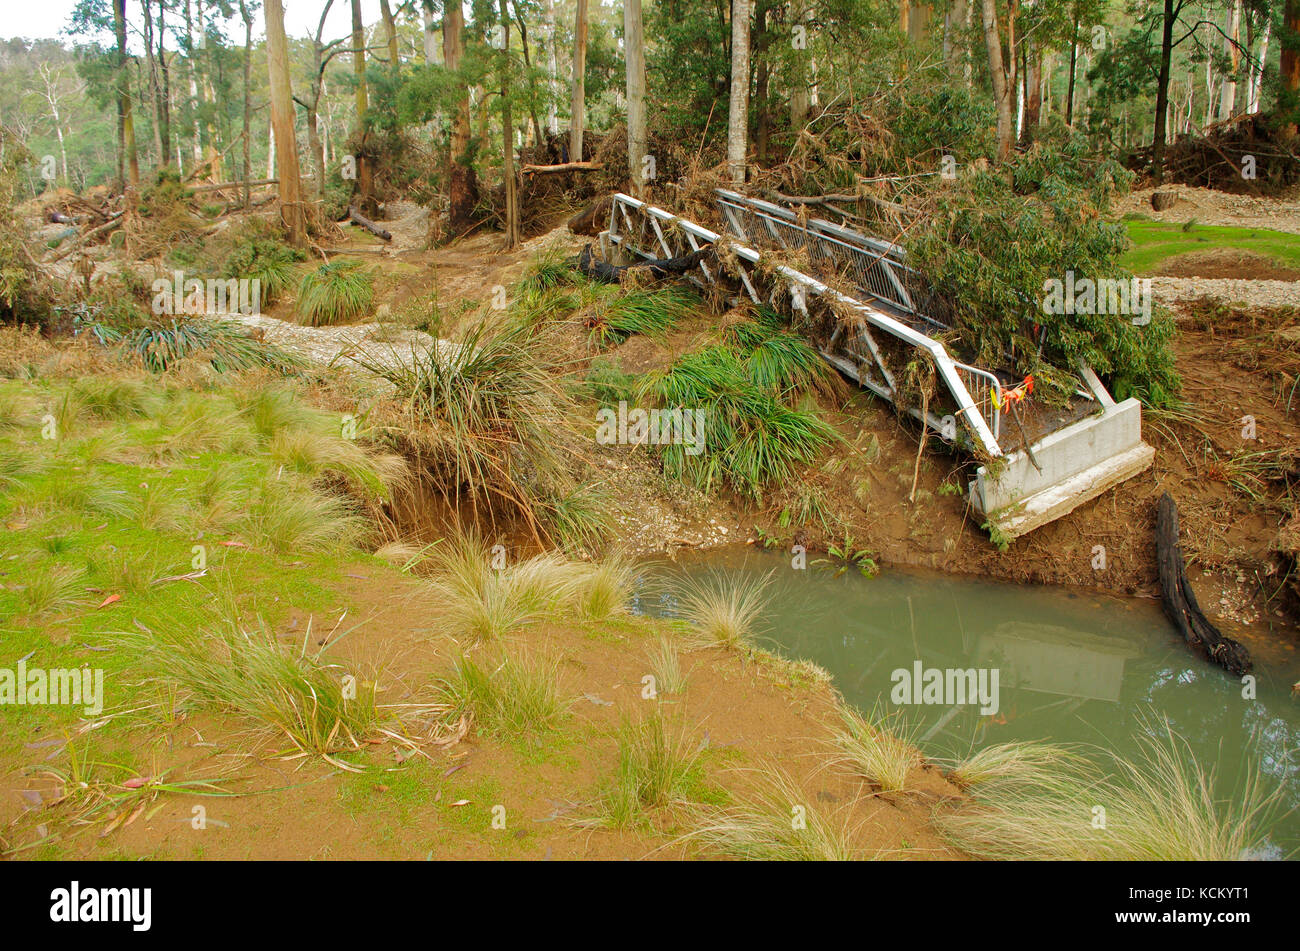 Dégâts causés par les inondations à la plate-forme de visualisation de platypus. Réserve forestière de Warrawee, Latrobe, nord-ouest de la Tasmanie, Australie Banque D'Images